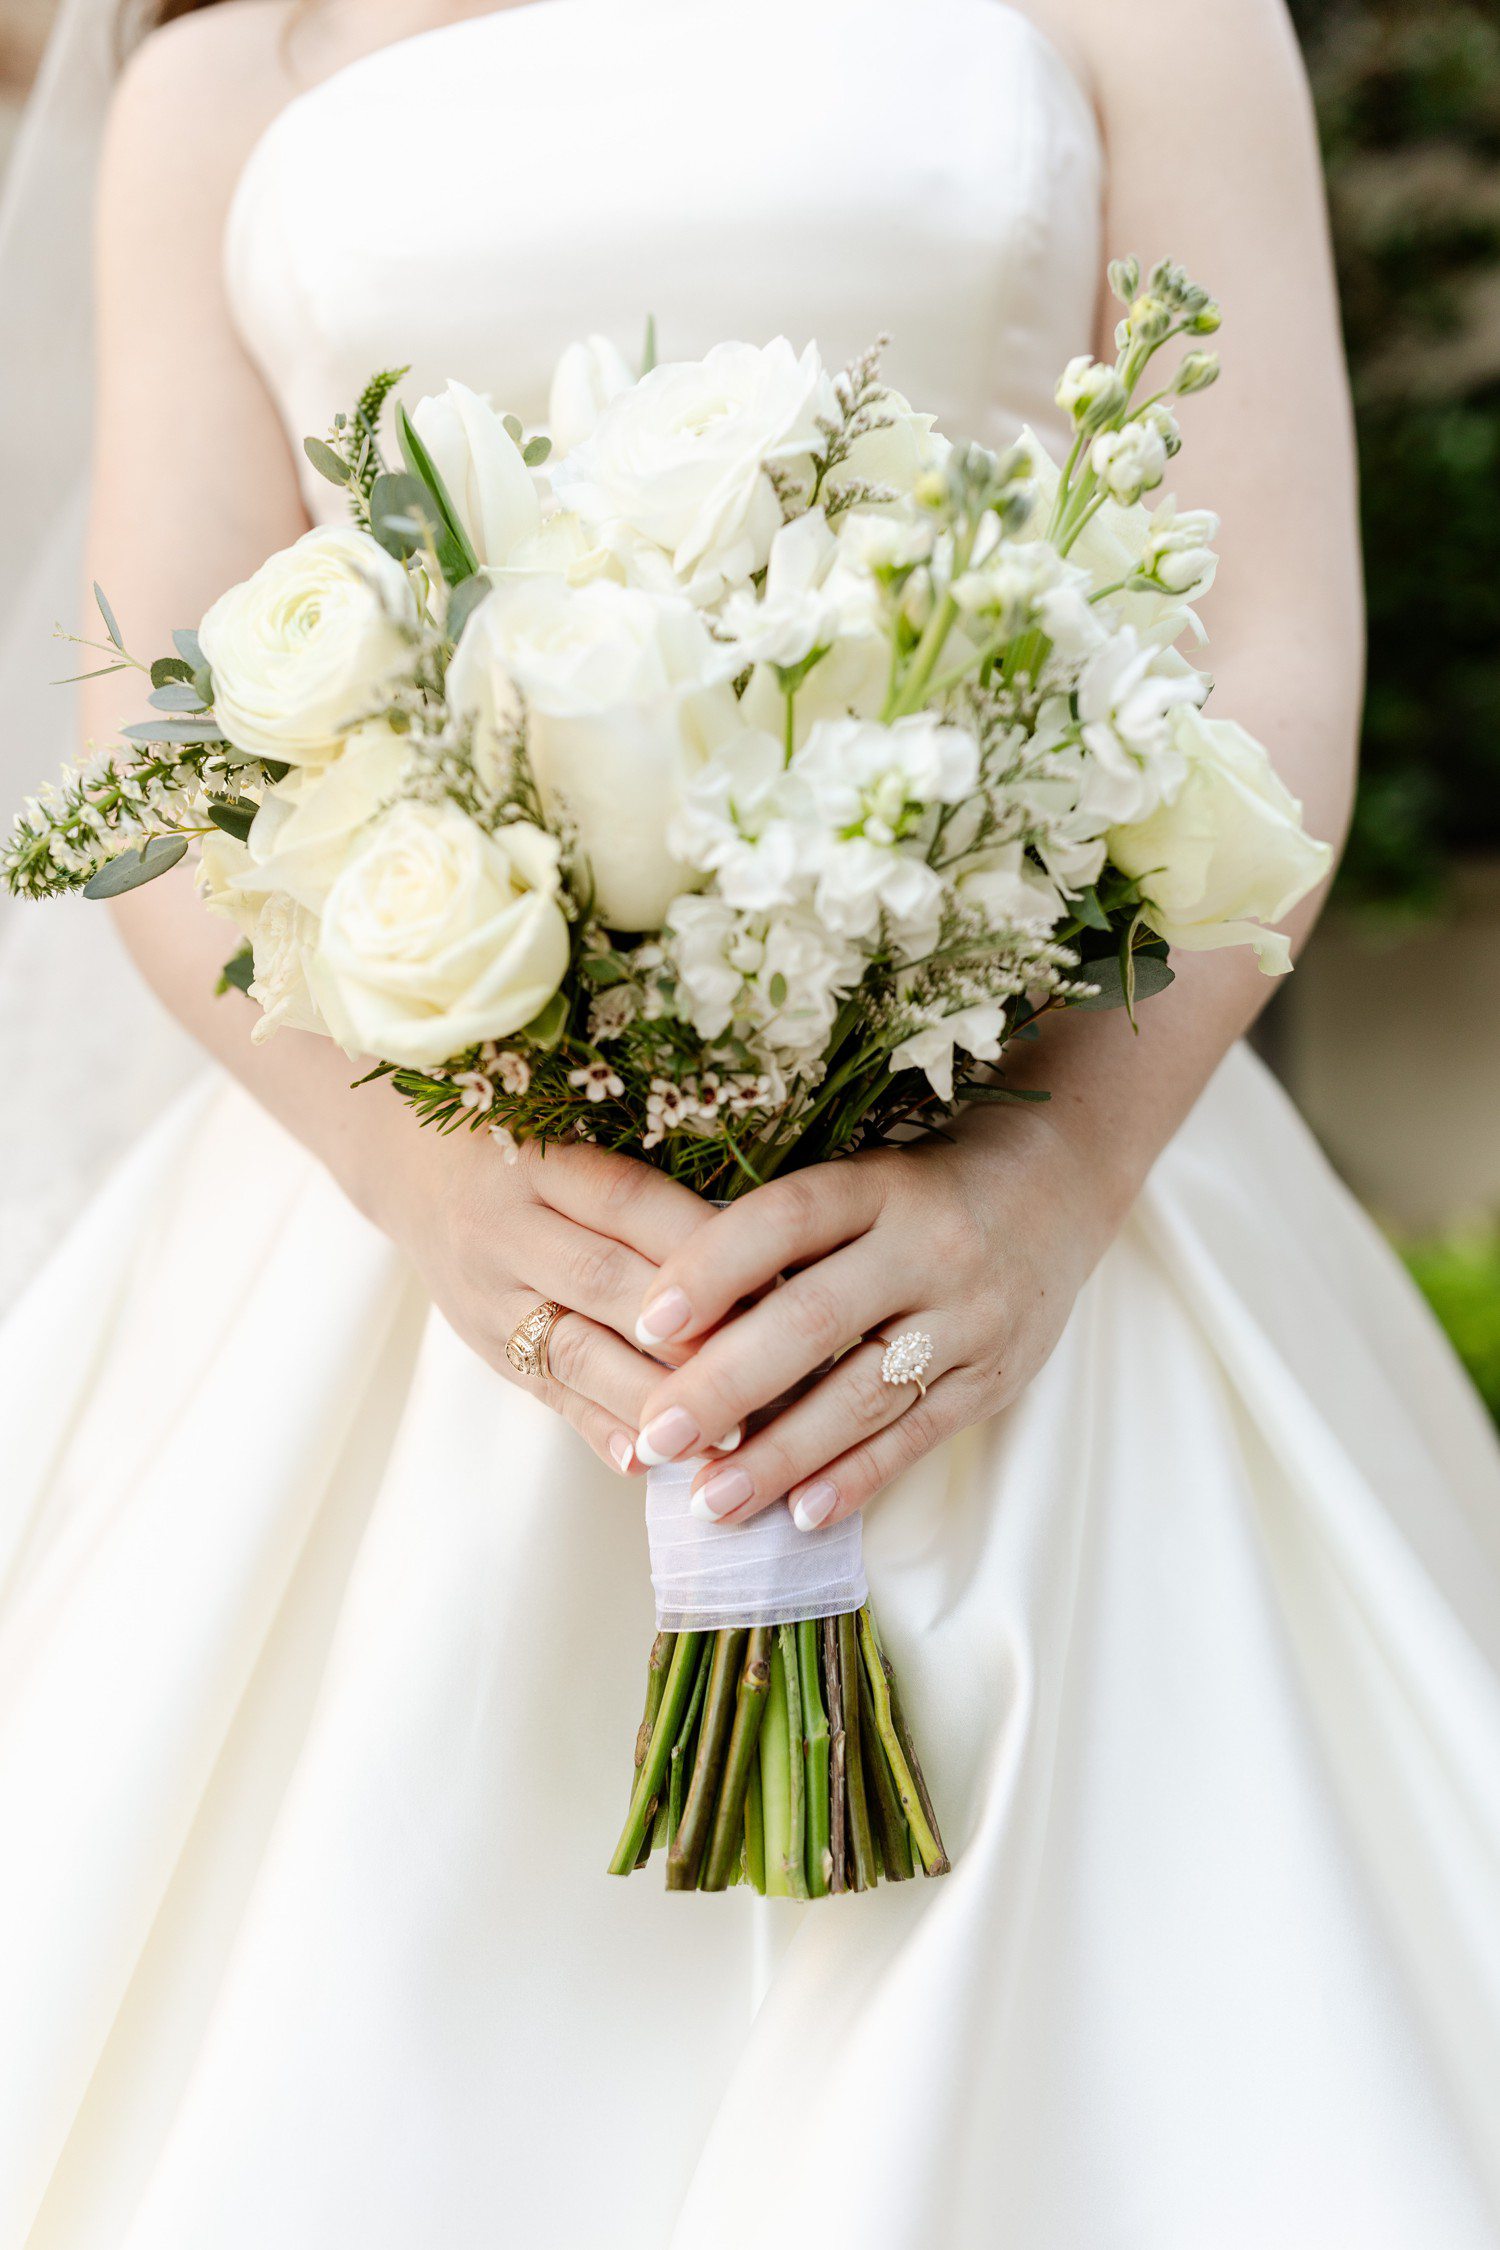 Bride holding white bridal bouquet.